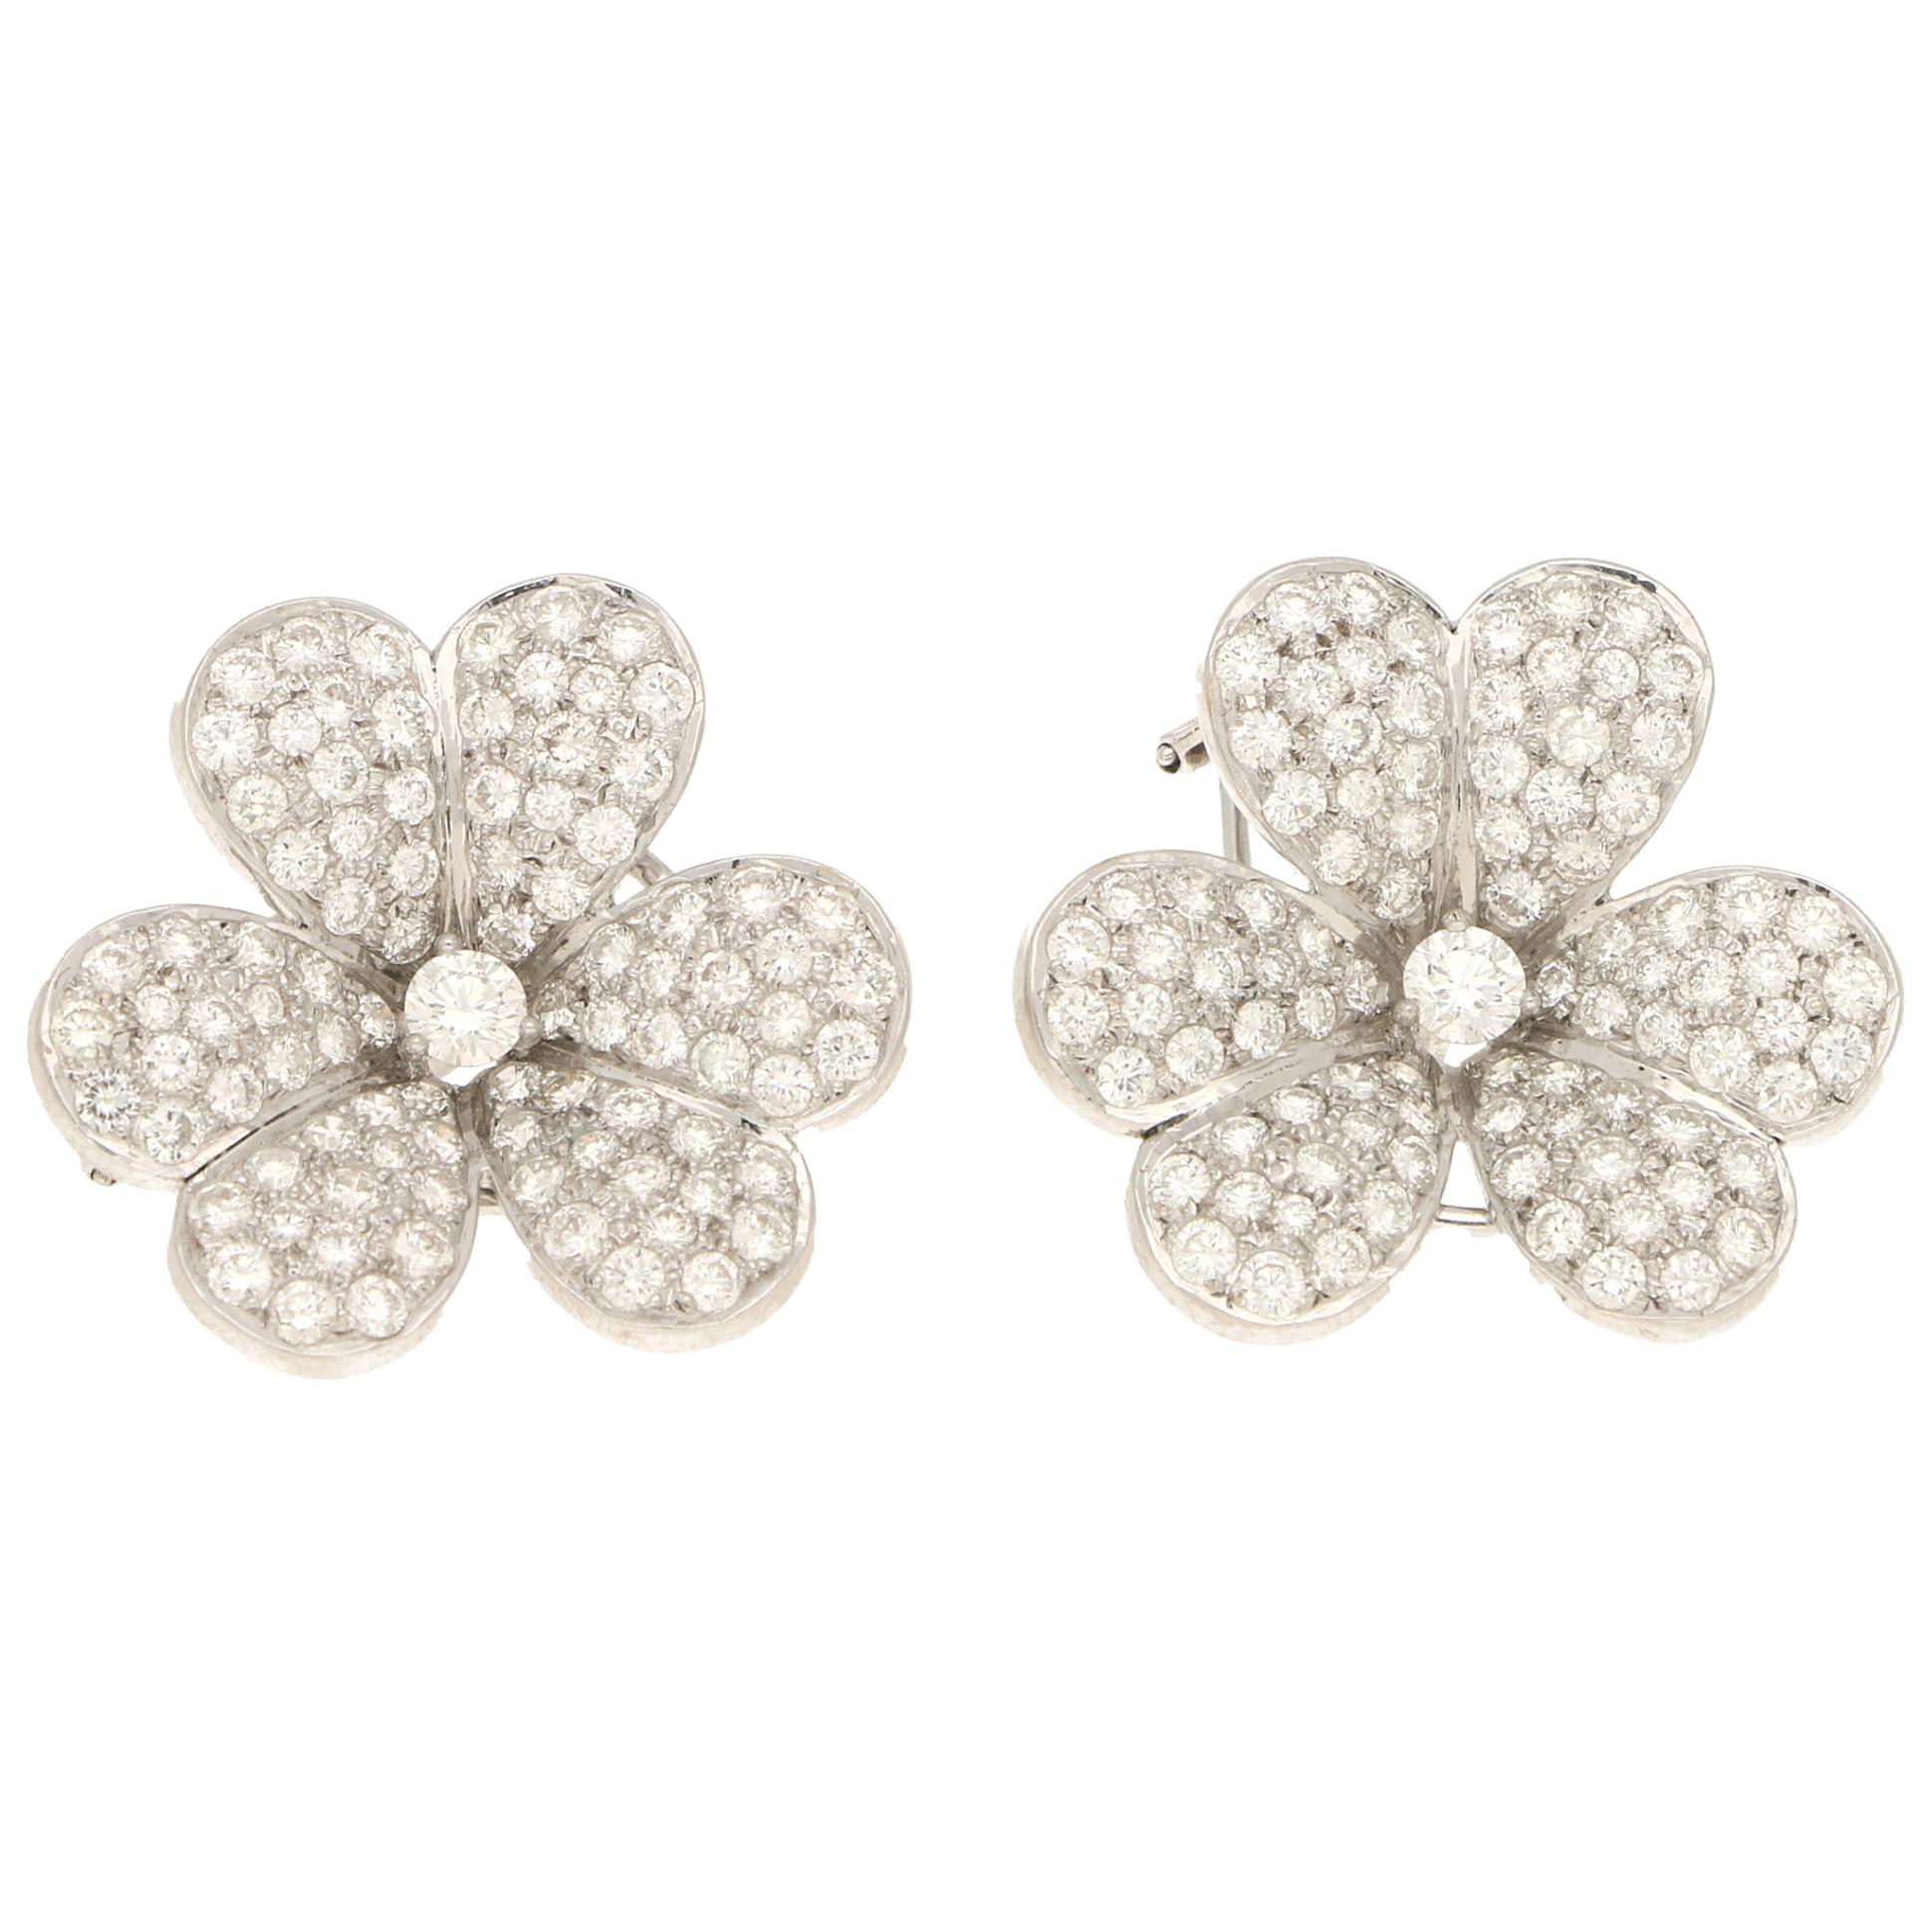 Diamond Clover Earrings Set in 18k White Gold 